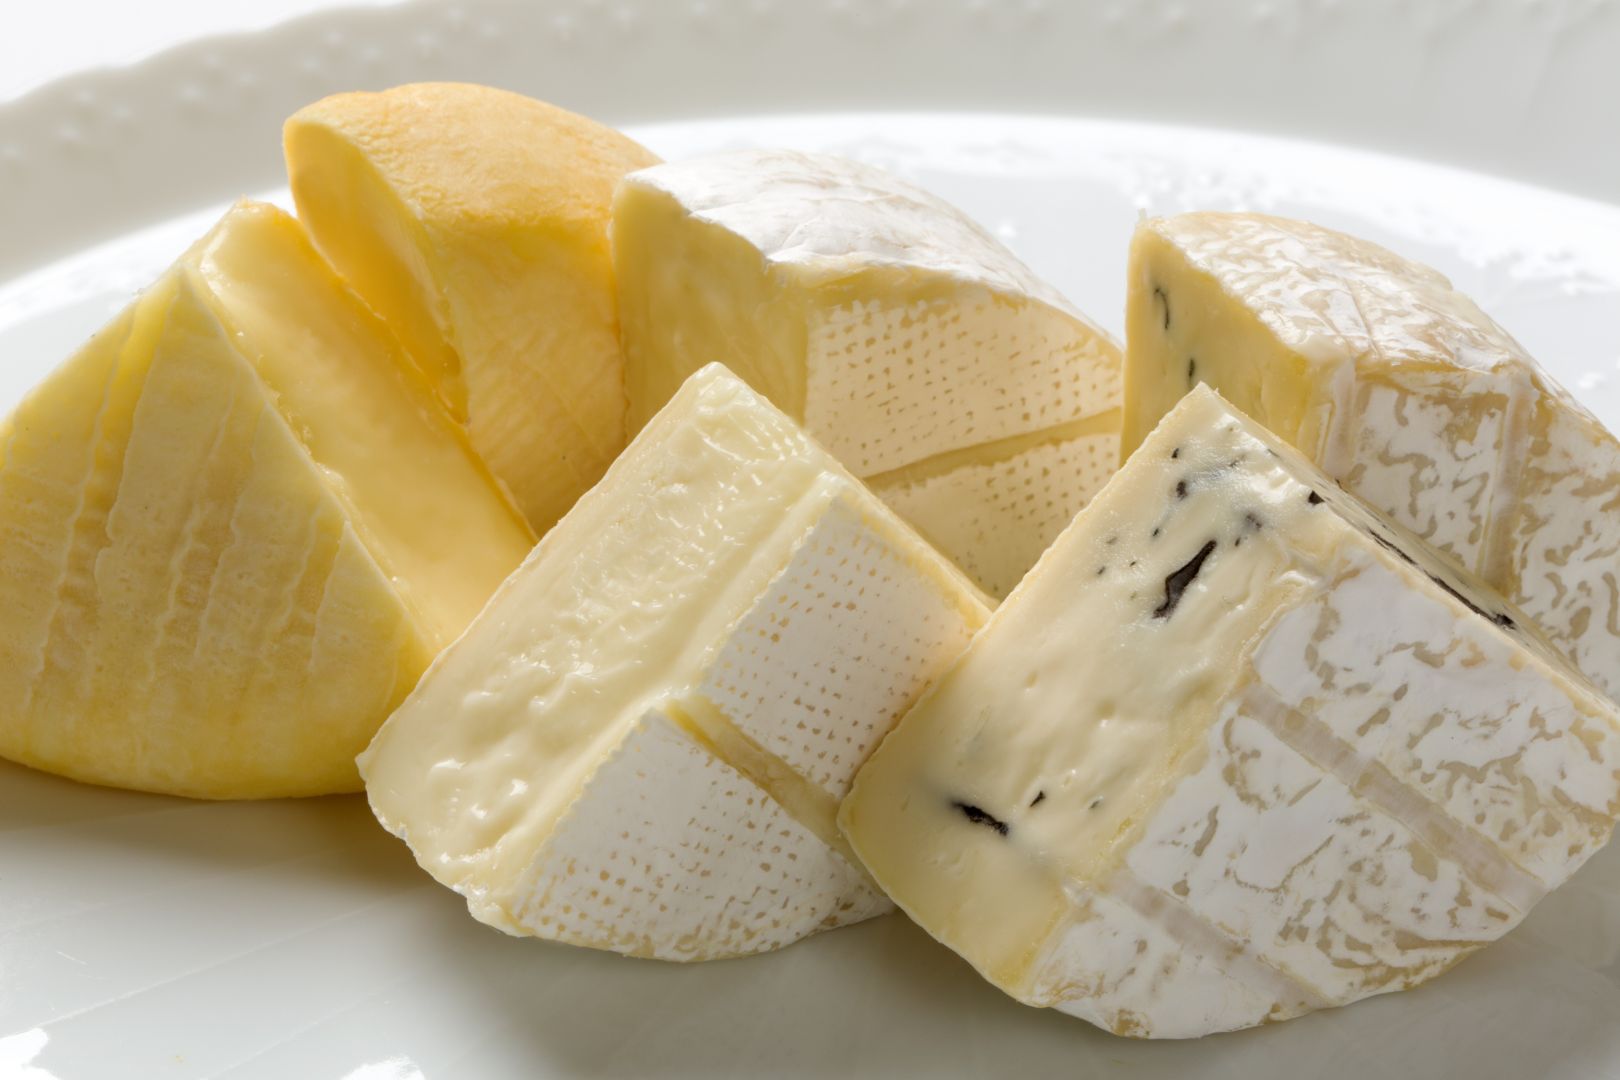 Poptávka na máslo v blocích (Mléčné výrobky) - Znojmo